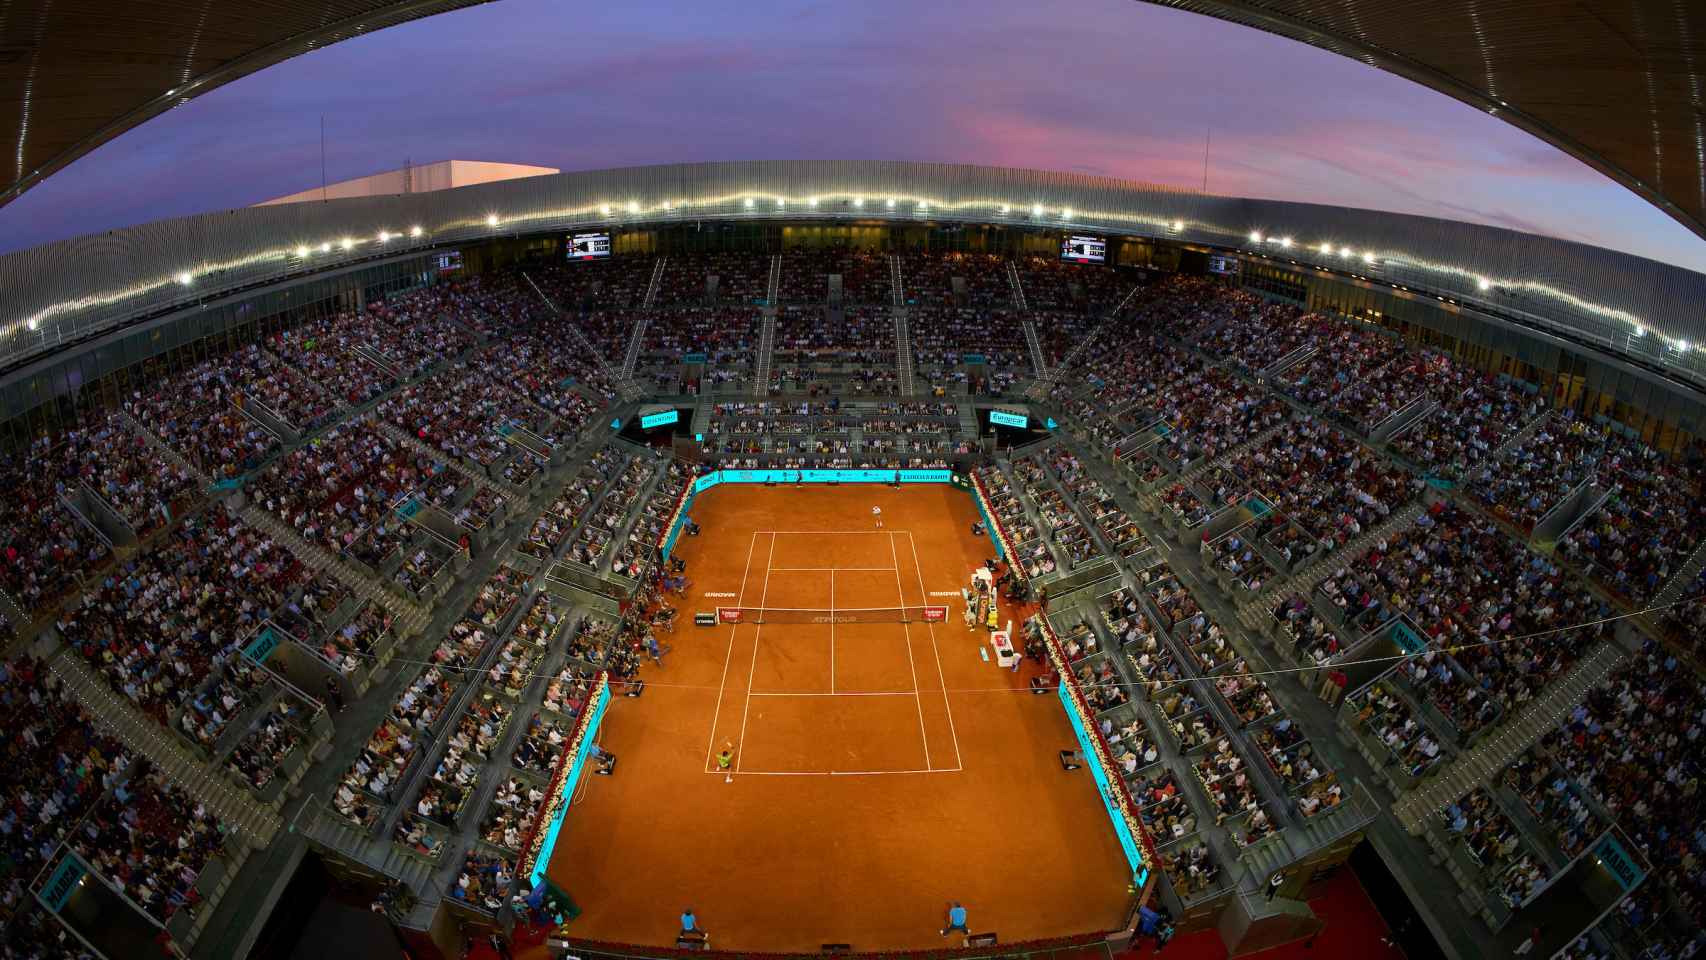 La pista central de la Caja Mágica, la Manolo Santana, durante el Mutua Madrid Open